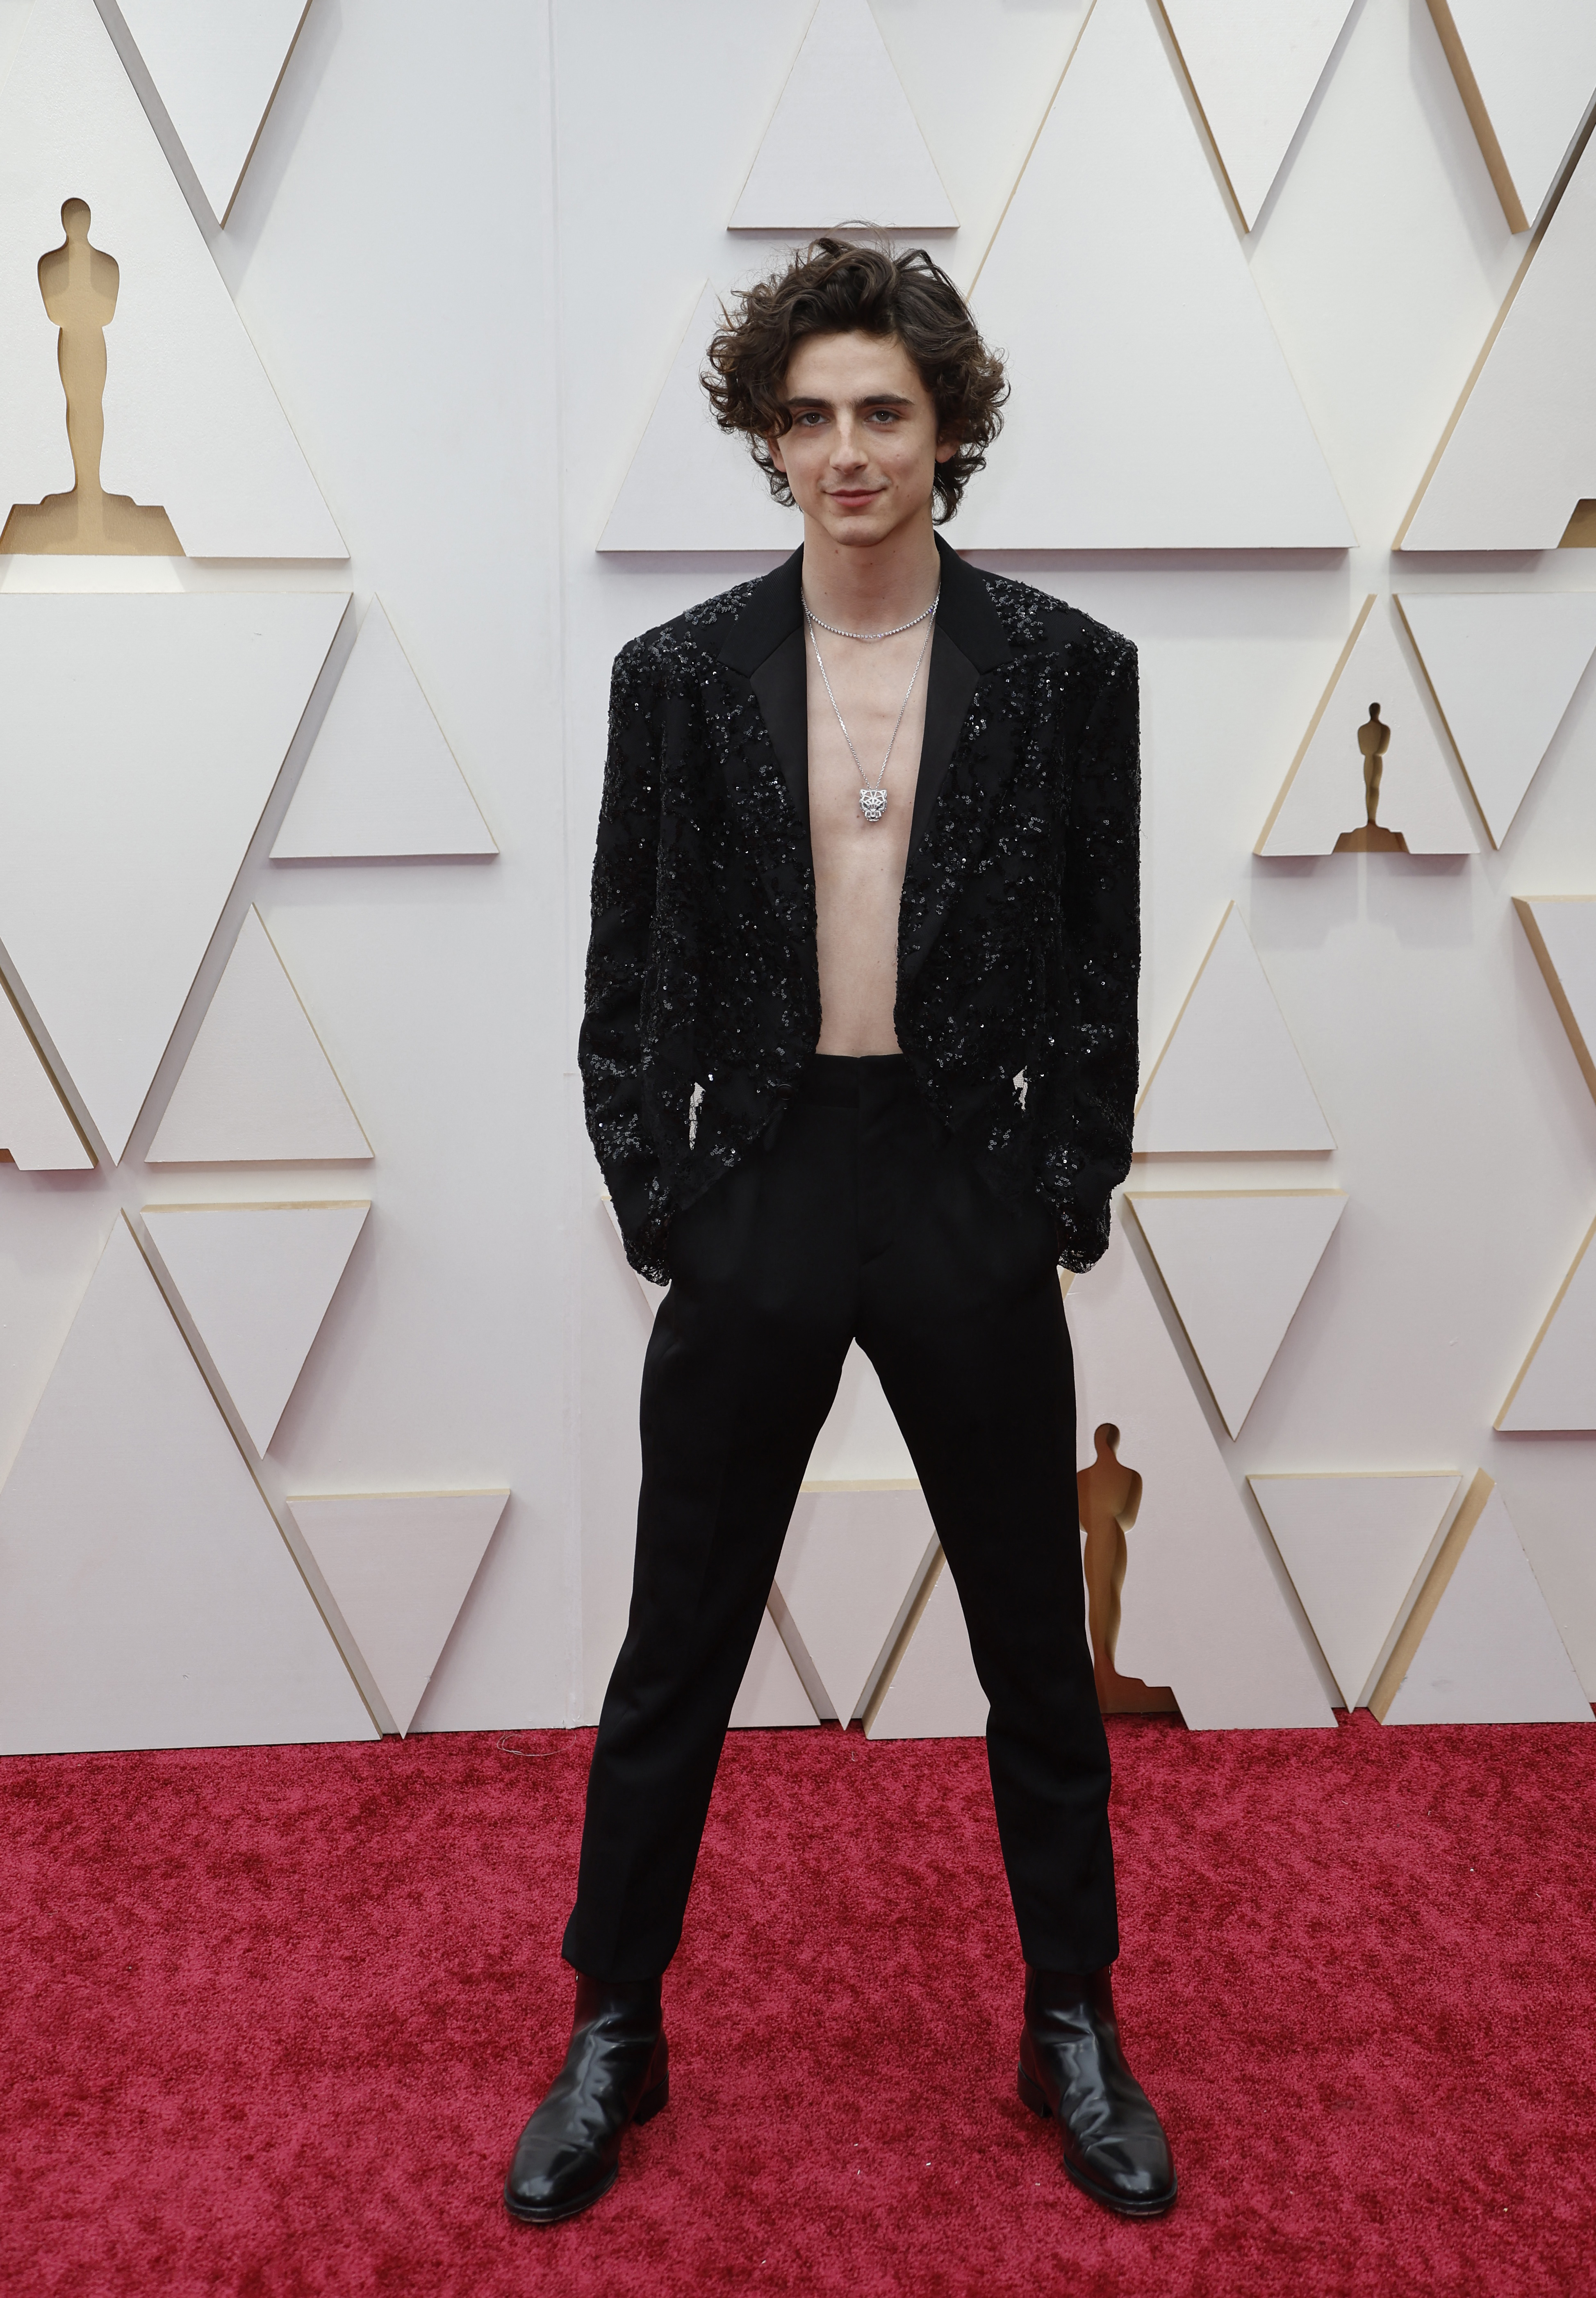 El joven actor no solo obvió la camisa, sino que optó joyería y bajo su extraordinario Louis Vuitton. “Me encanta este look", dijo Fernández (REUTERS/Eric Gaillard)